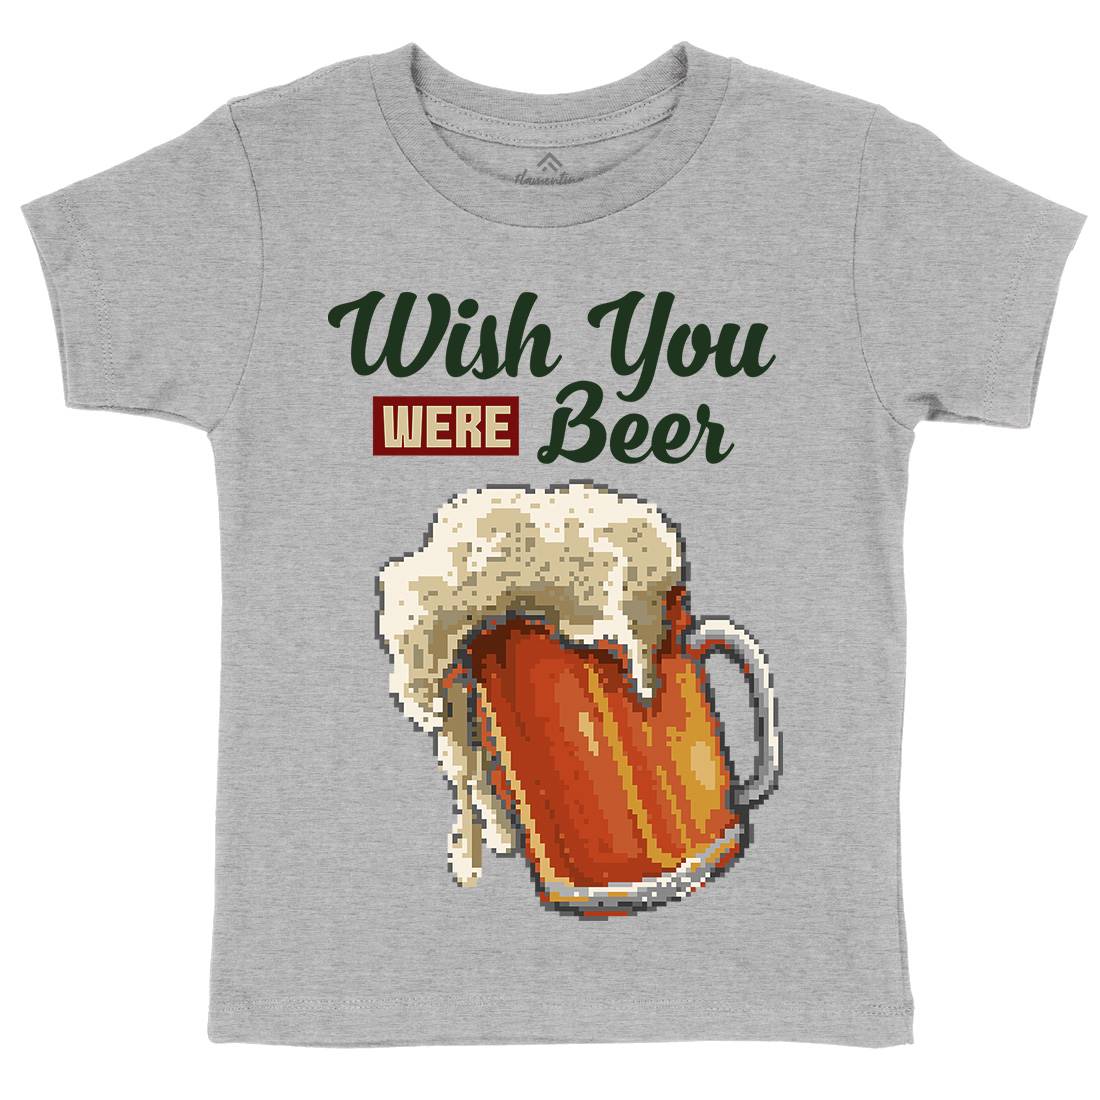 Wish Beer Kids Organic Crew Neck T-Shirt Drinks B980